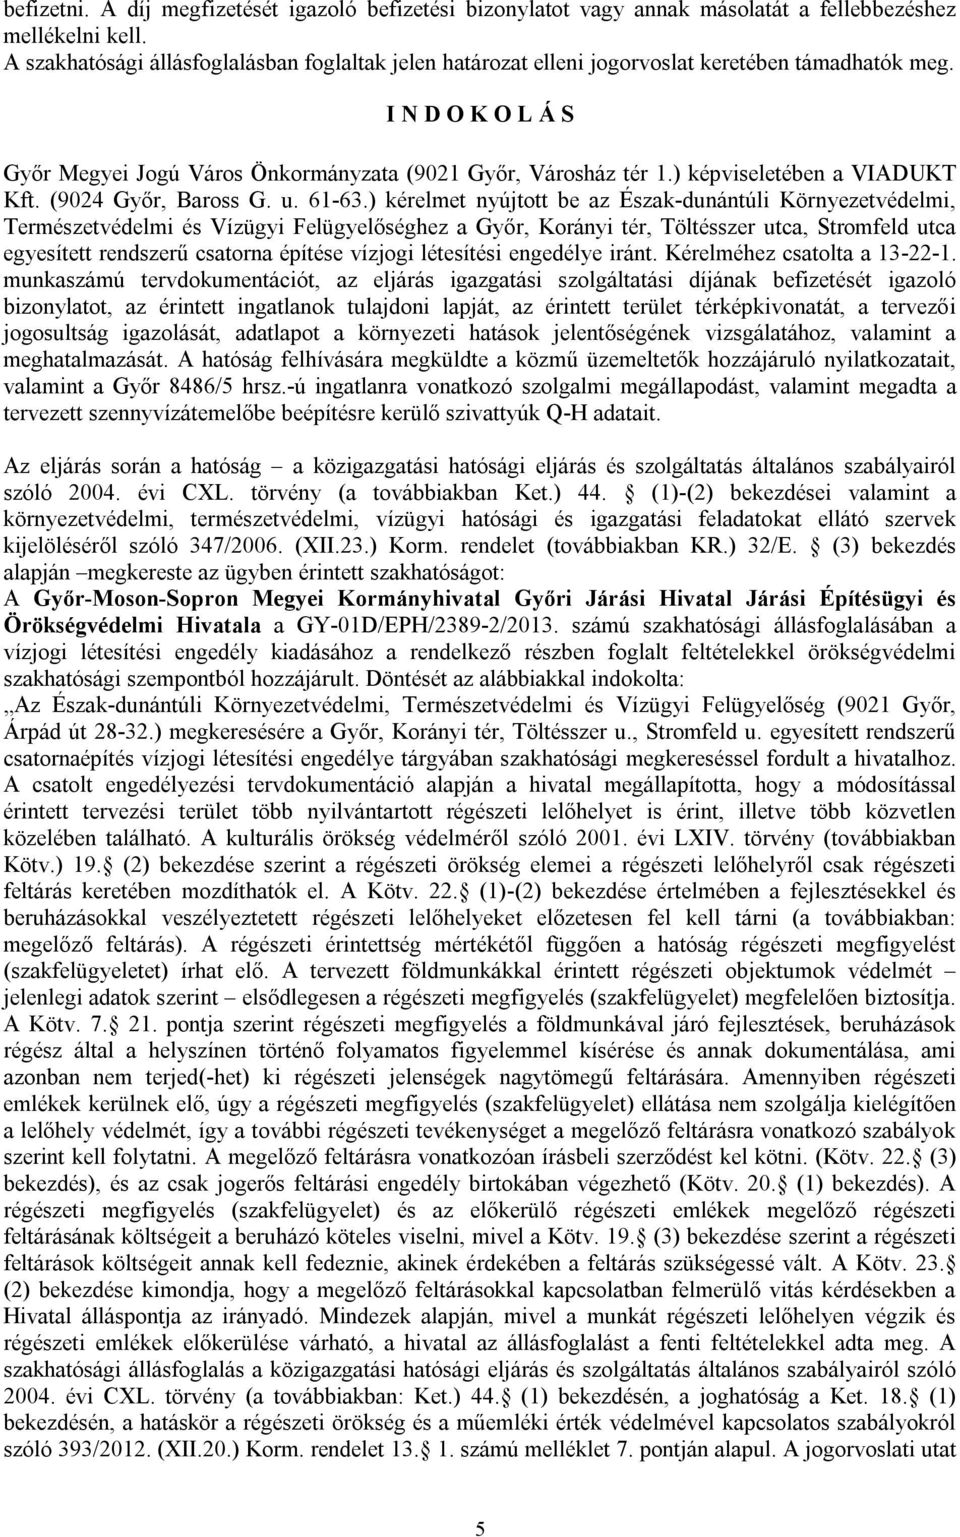 ) képviseletében a VIADUKT Kft. (9024 Győr, Baross G. u. 61-63.